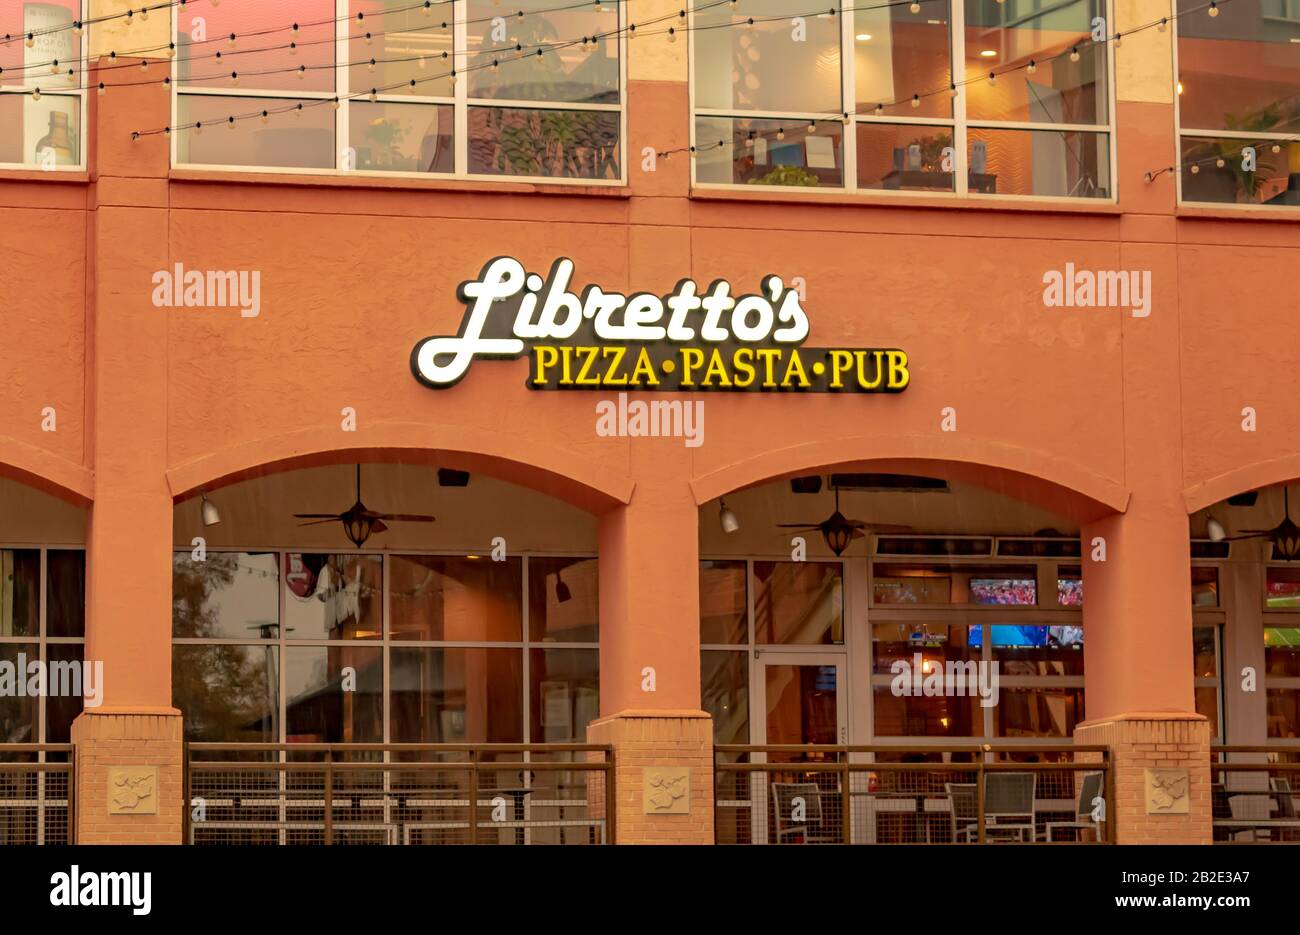 Charlotte, NC/USA - 23. November 2019: Marke "Libretto's Pizza Pasta Pub" und Logo auf der Außenseite des Restaurants in weißen und gelben Buchstaben auf rötlichem sto Stockfoto